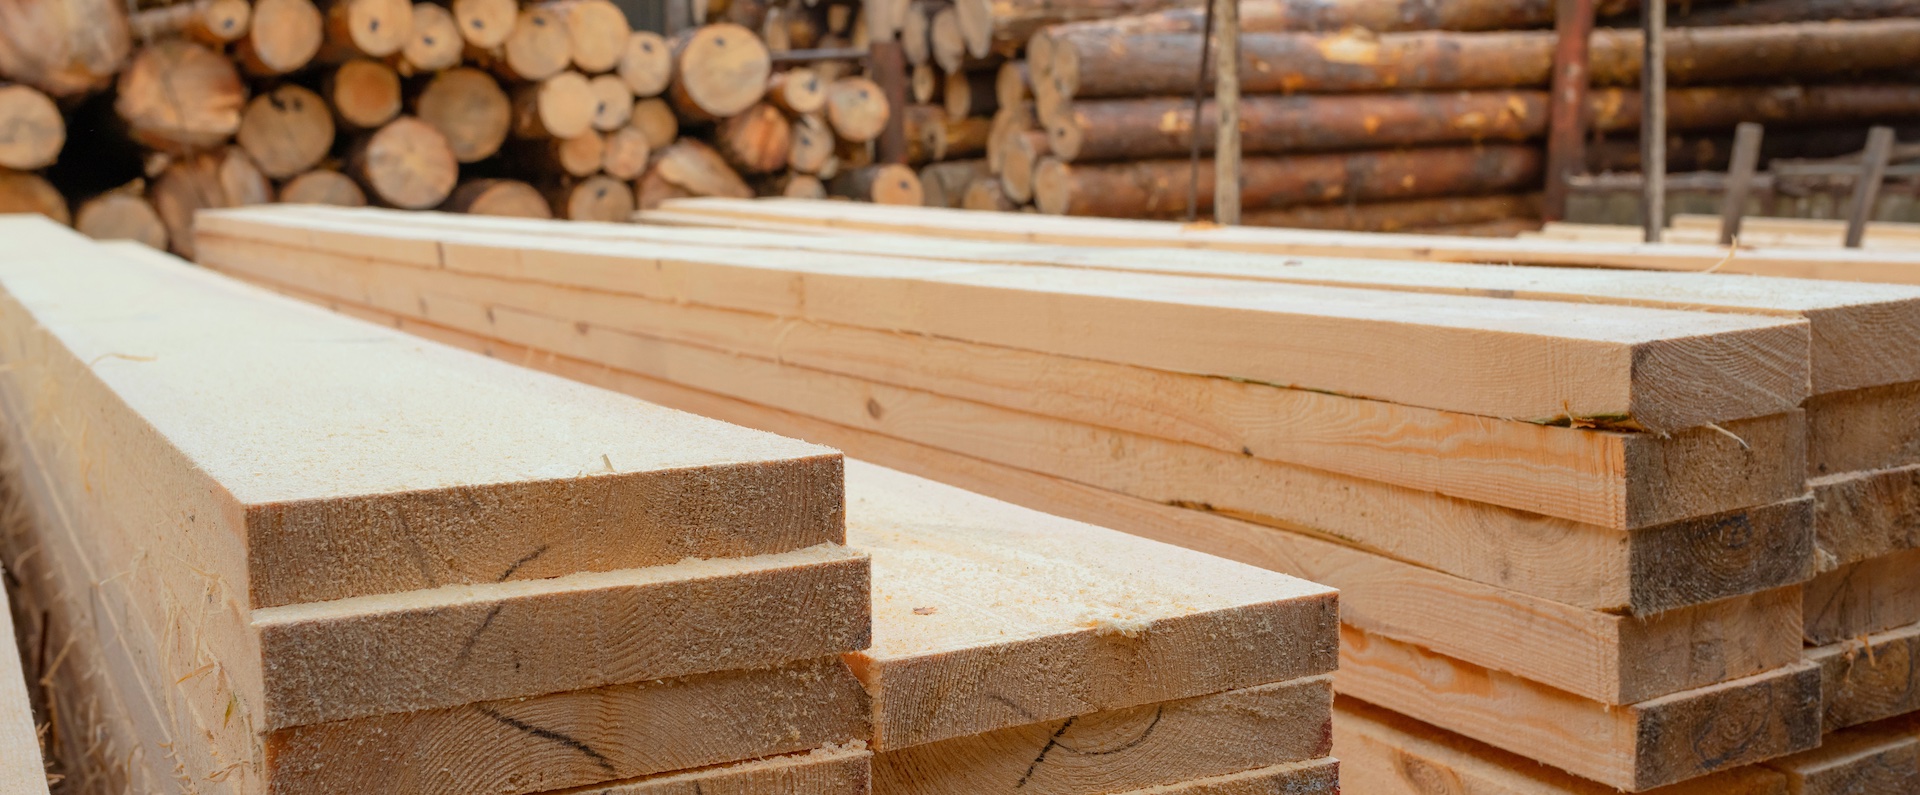 Drewno konstrukcyjne i baza tartaków w Polsce